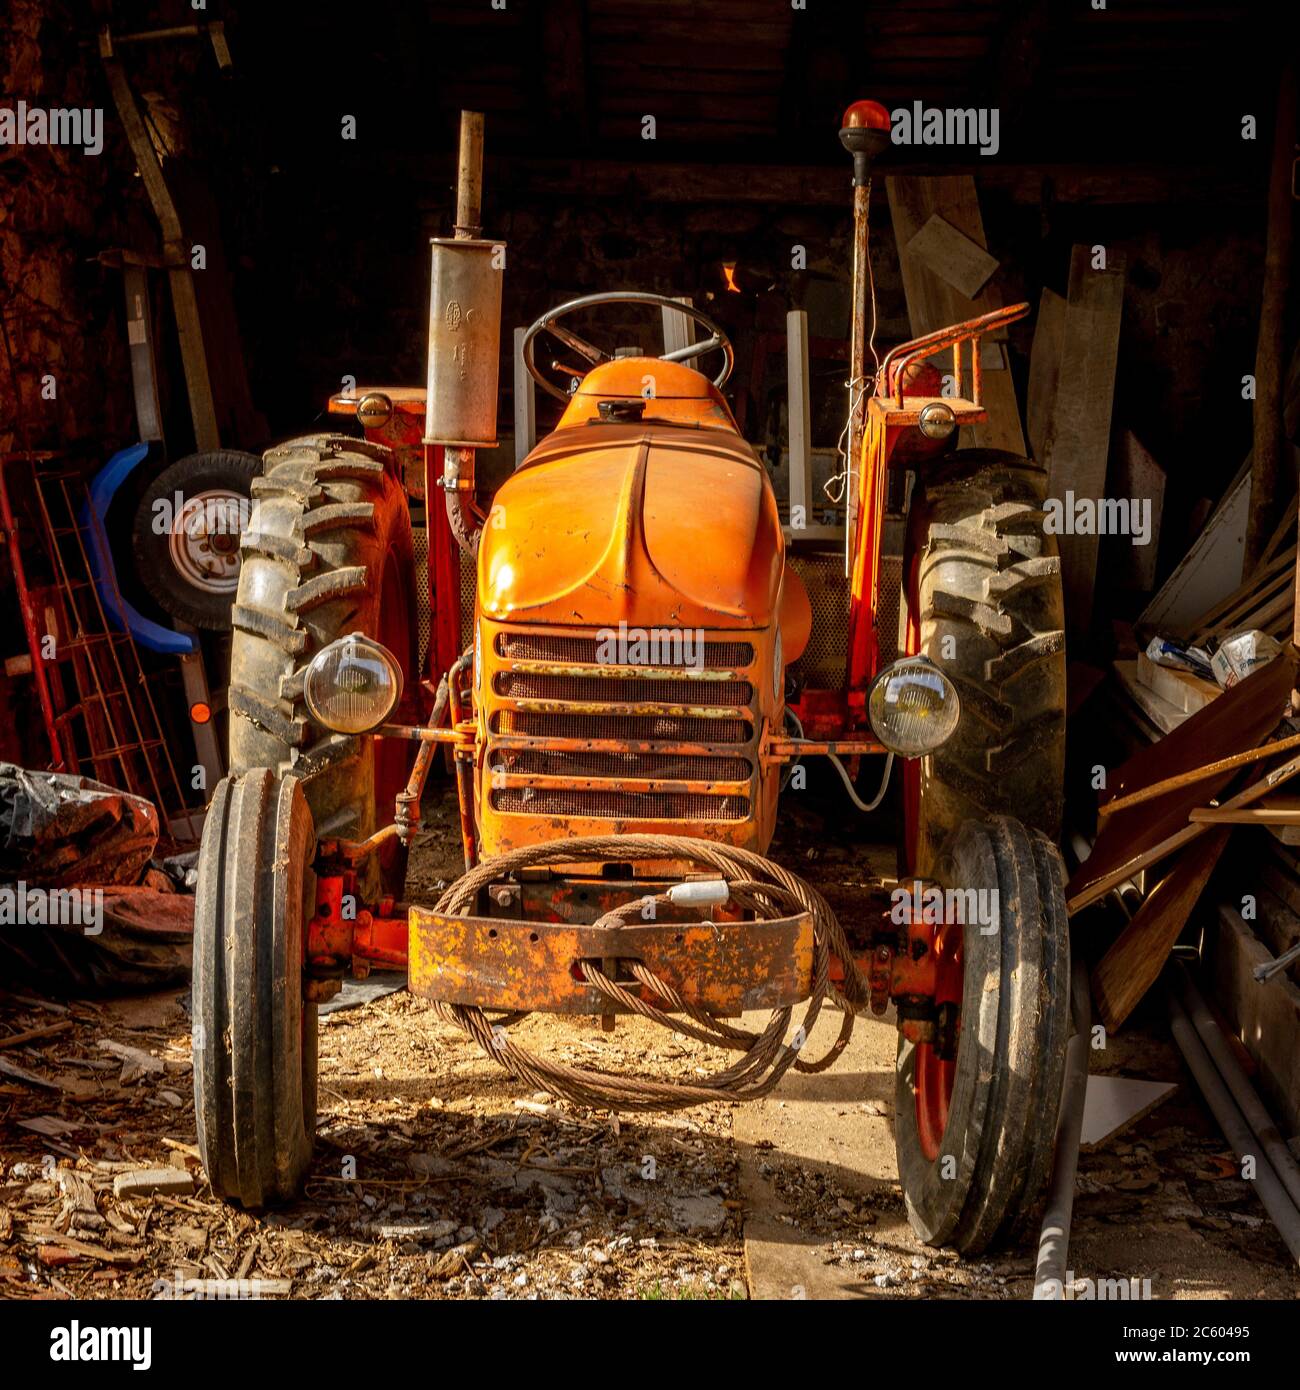 Tracteur orange inutilisé dans une ferme, Auvergne Rhône Alpes, France Banque D'Images